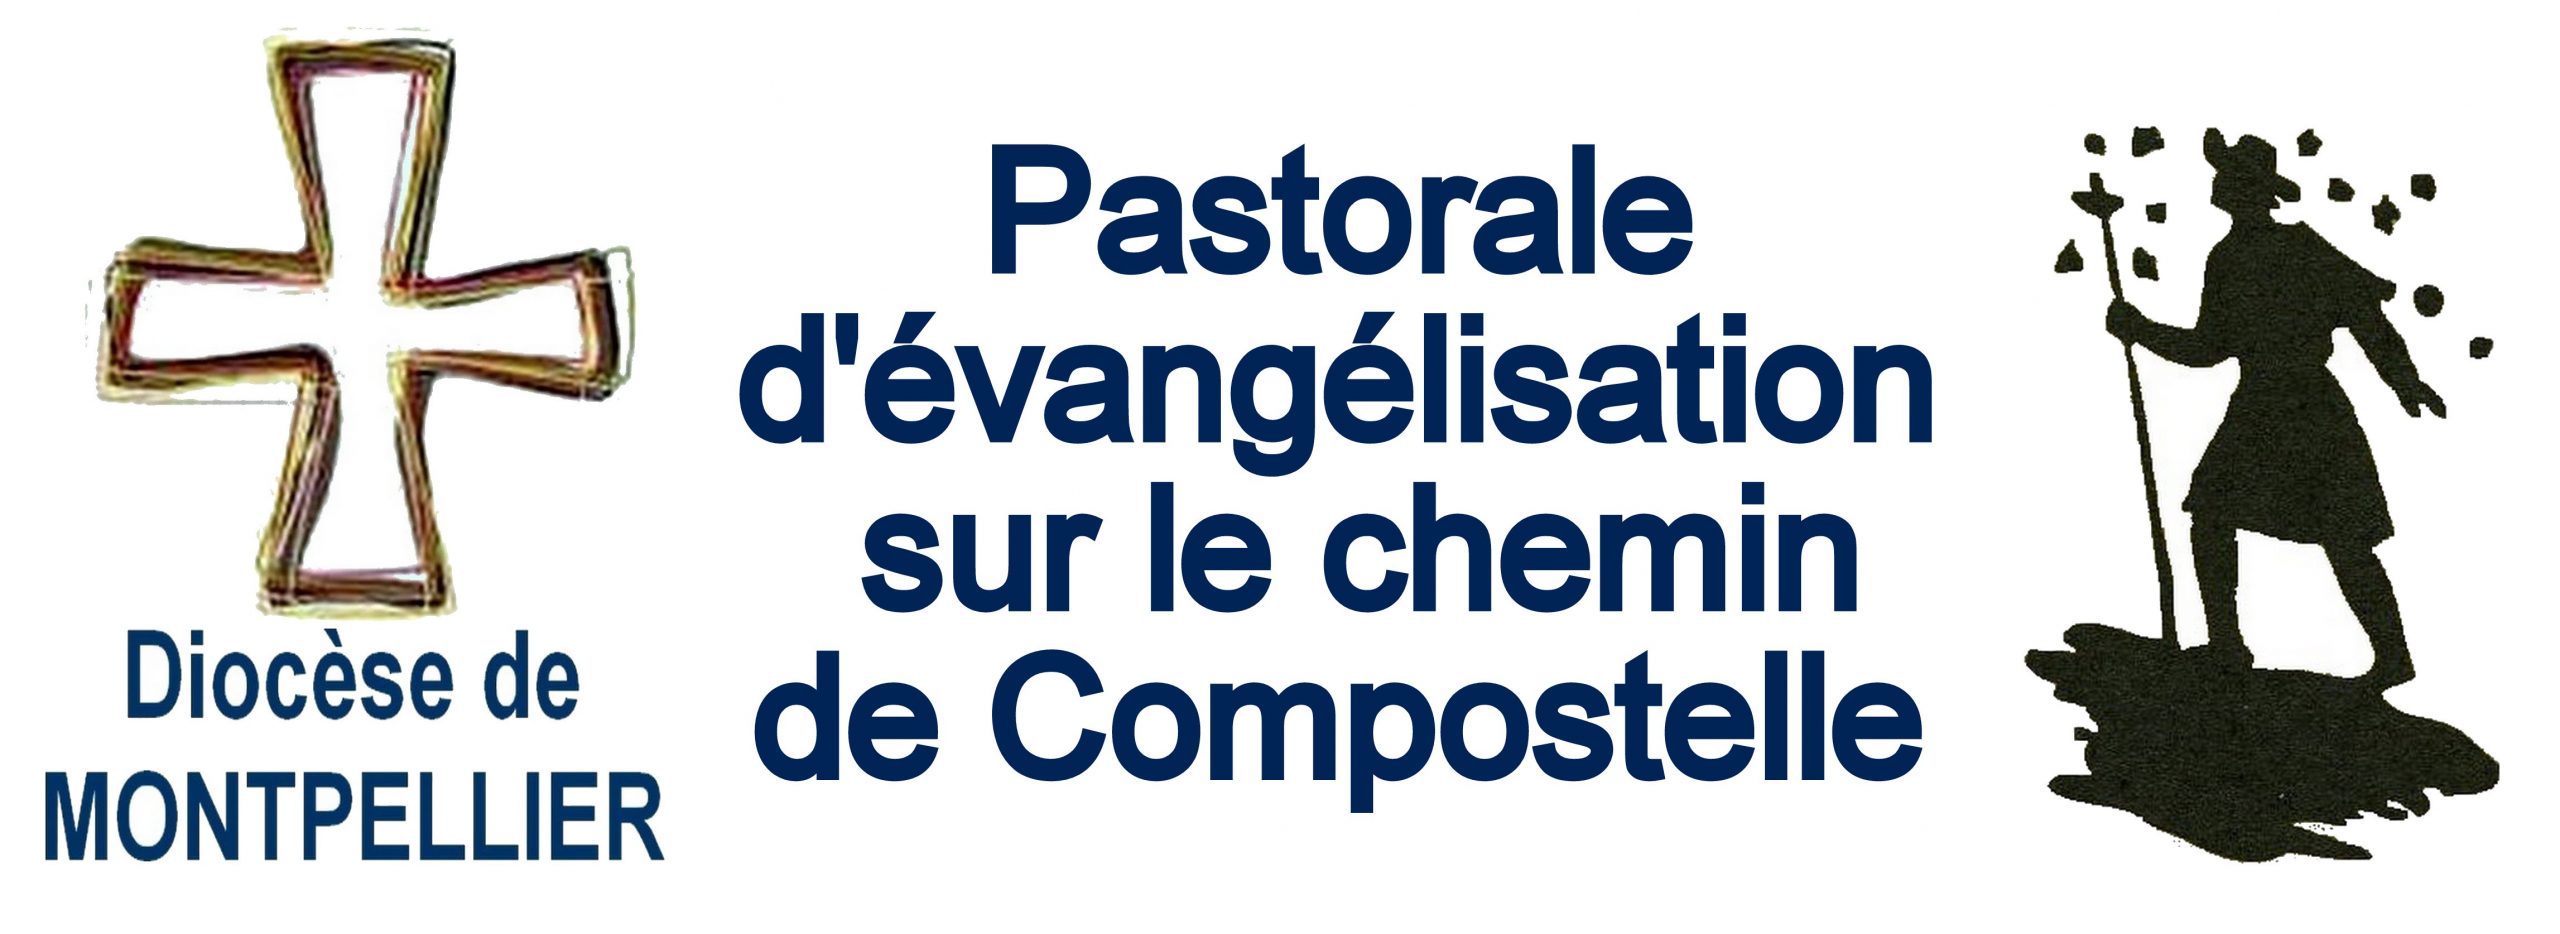 3ème rencontre de la pastorale sur les Chemins de Compostelle le 16 décembre à Saint-Thibéry (34)